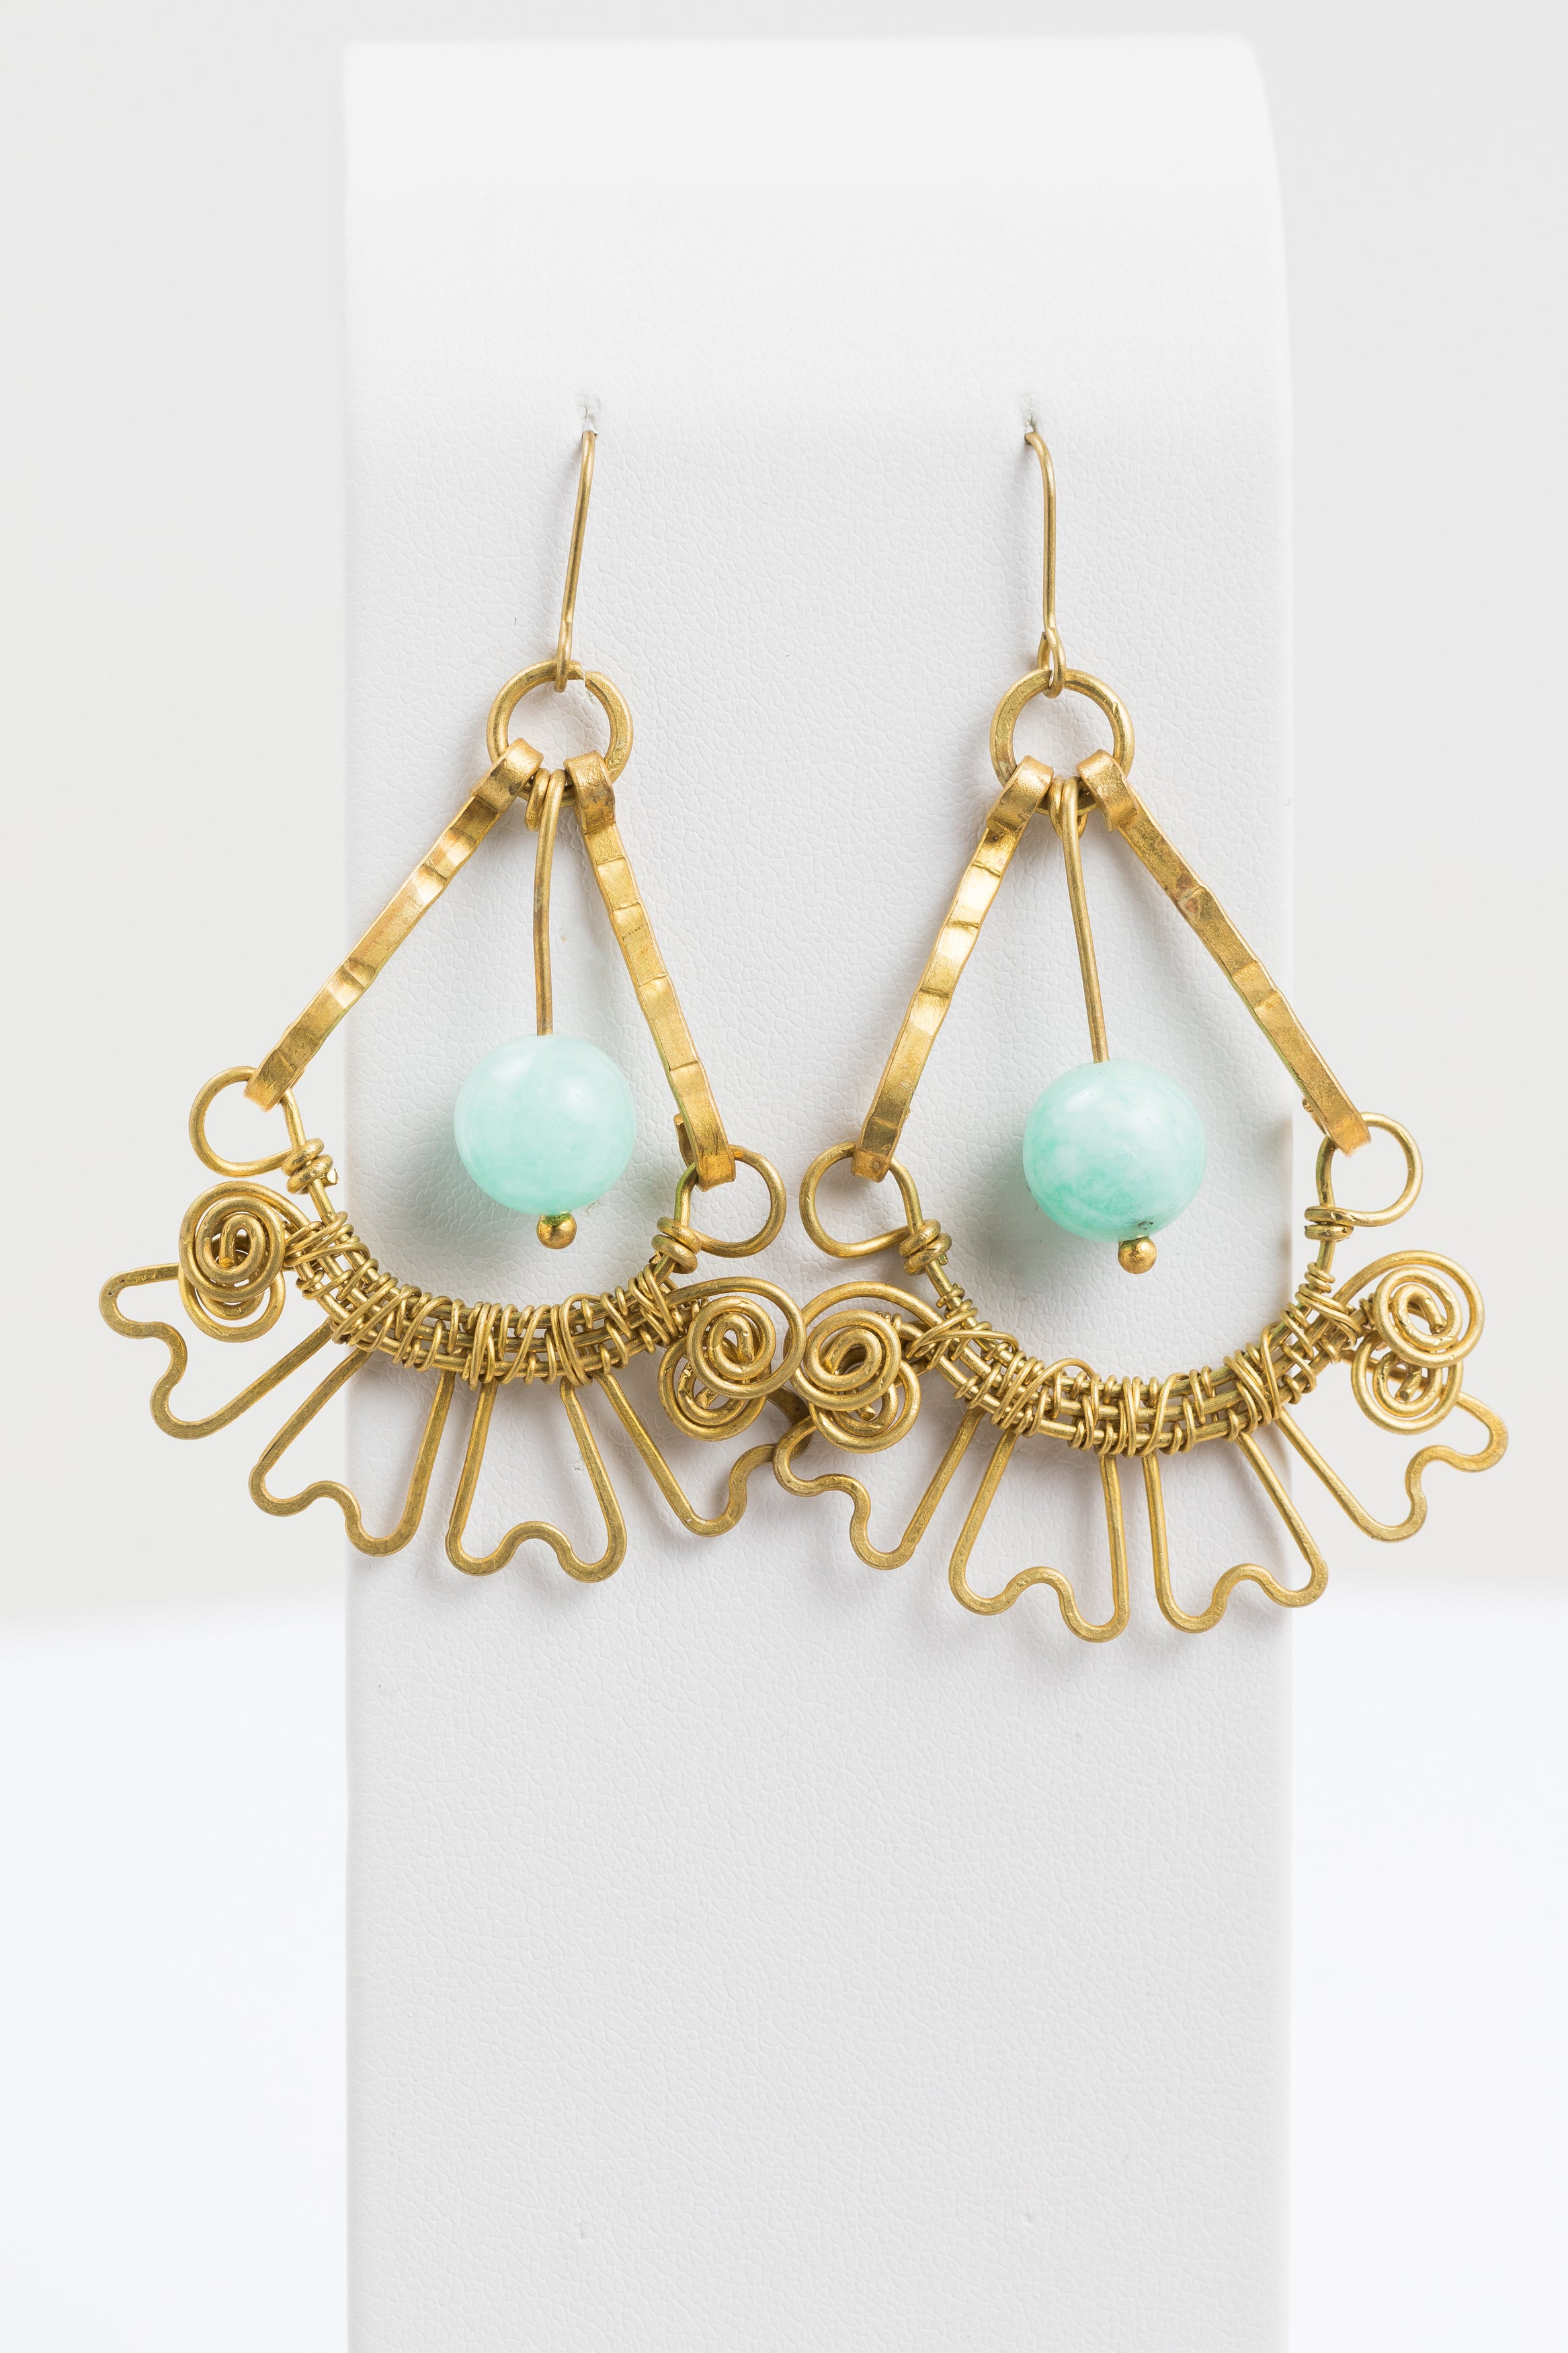 Larki Designs Gold Twisted Metal & Green Stone Earrings